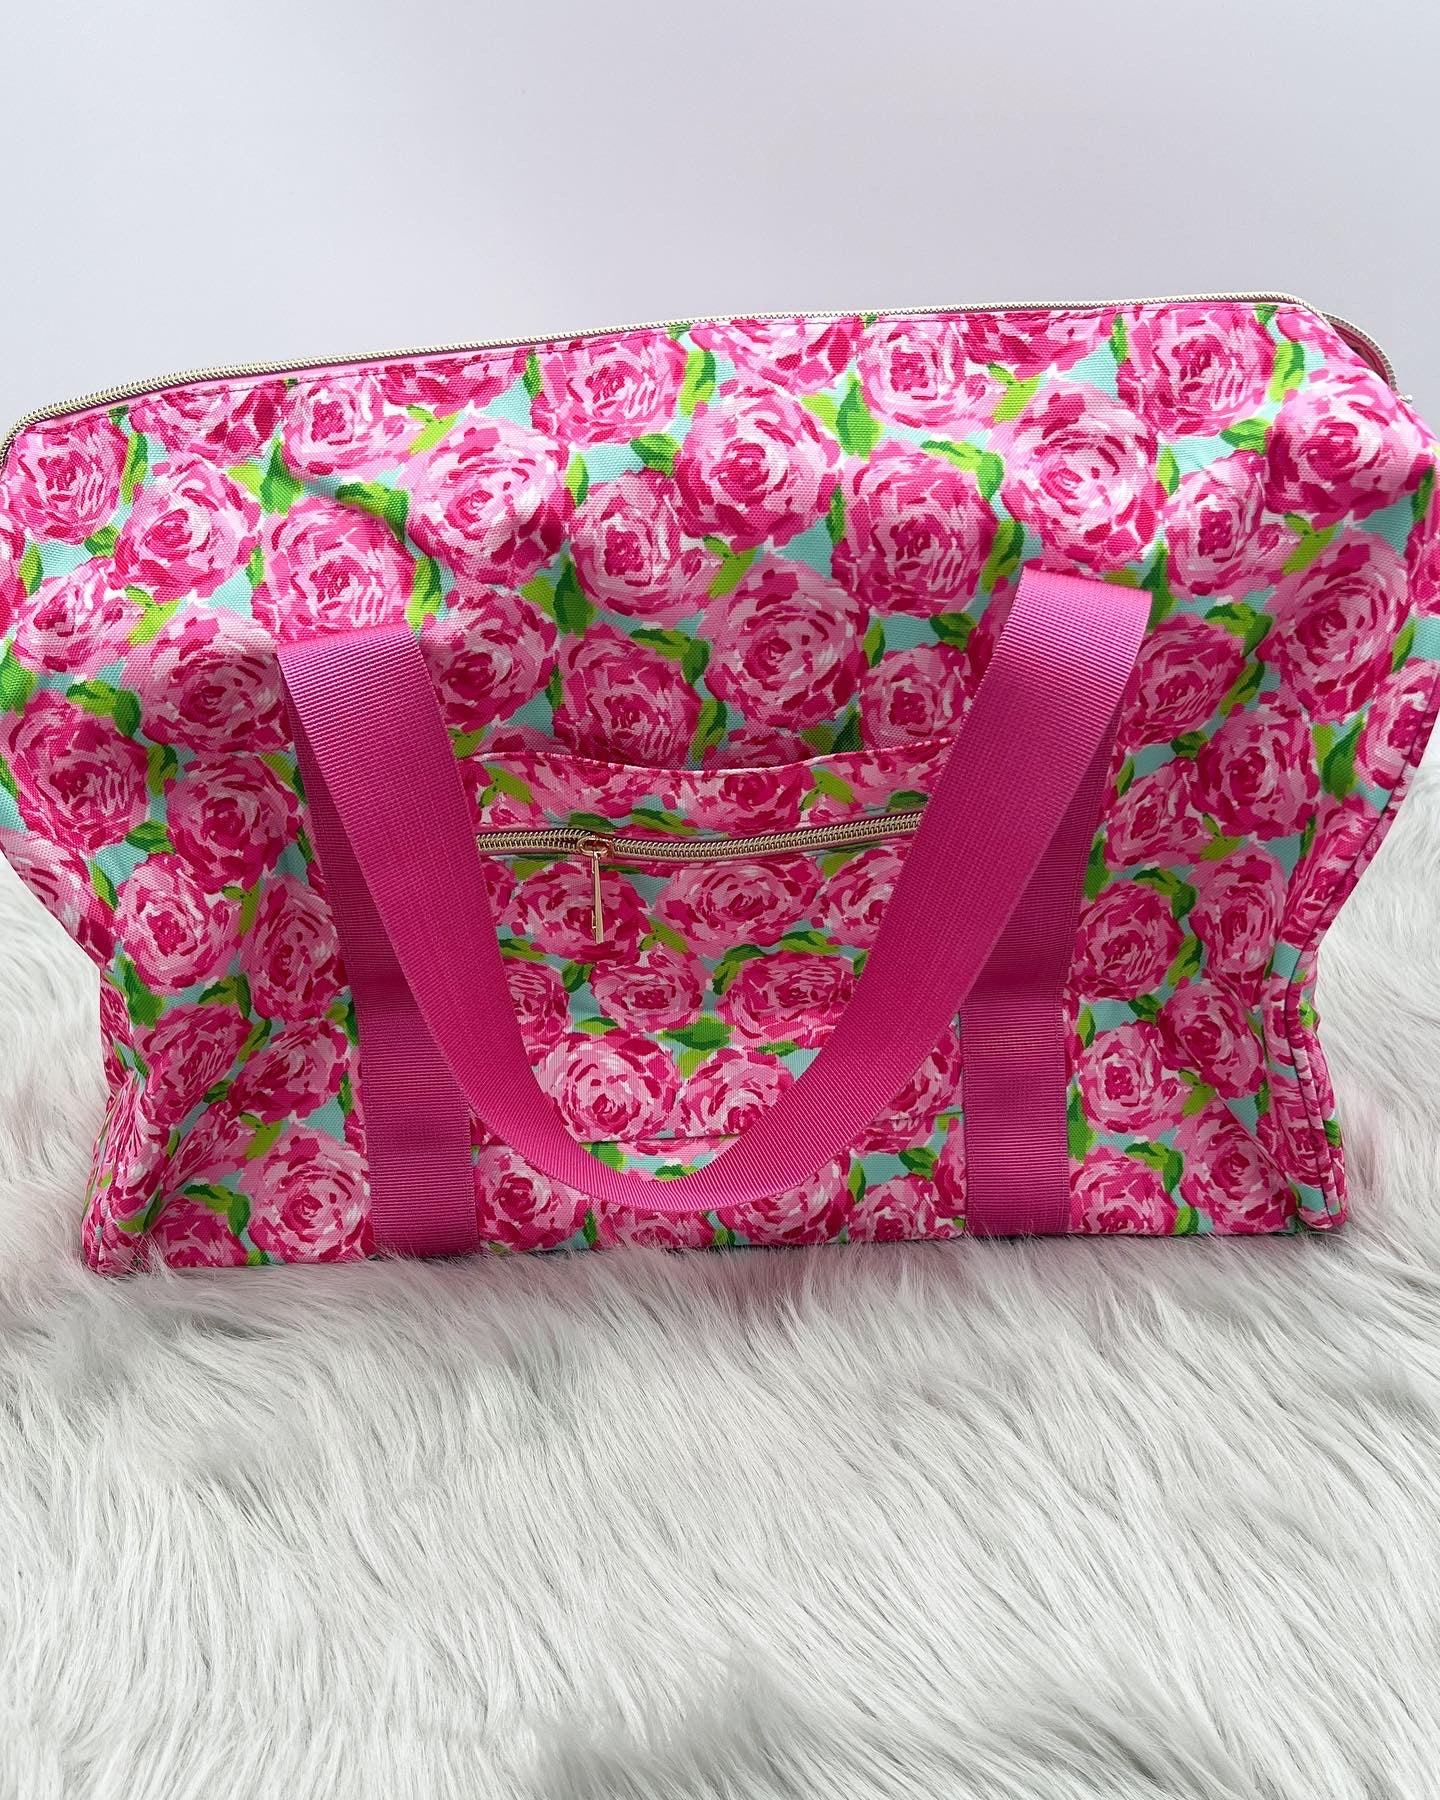 Rosey Pink Weekender Bag